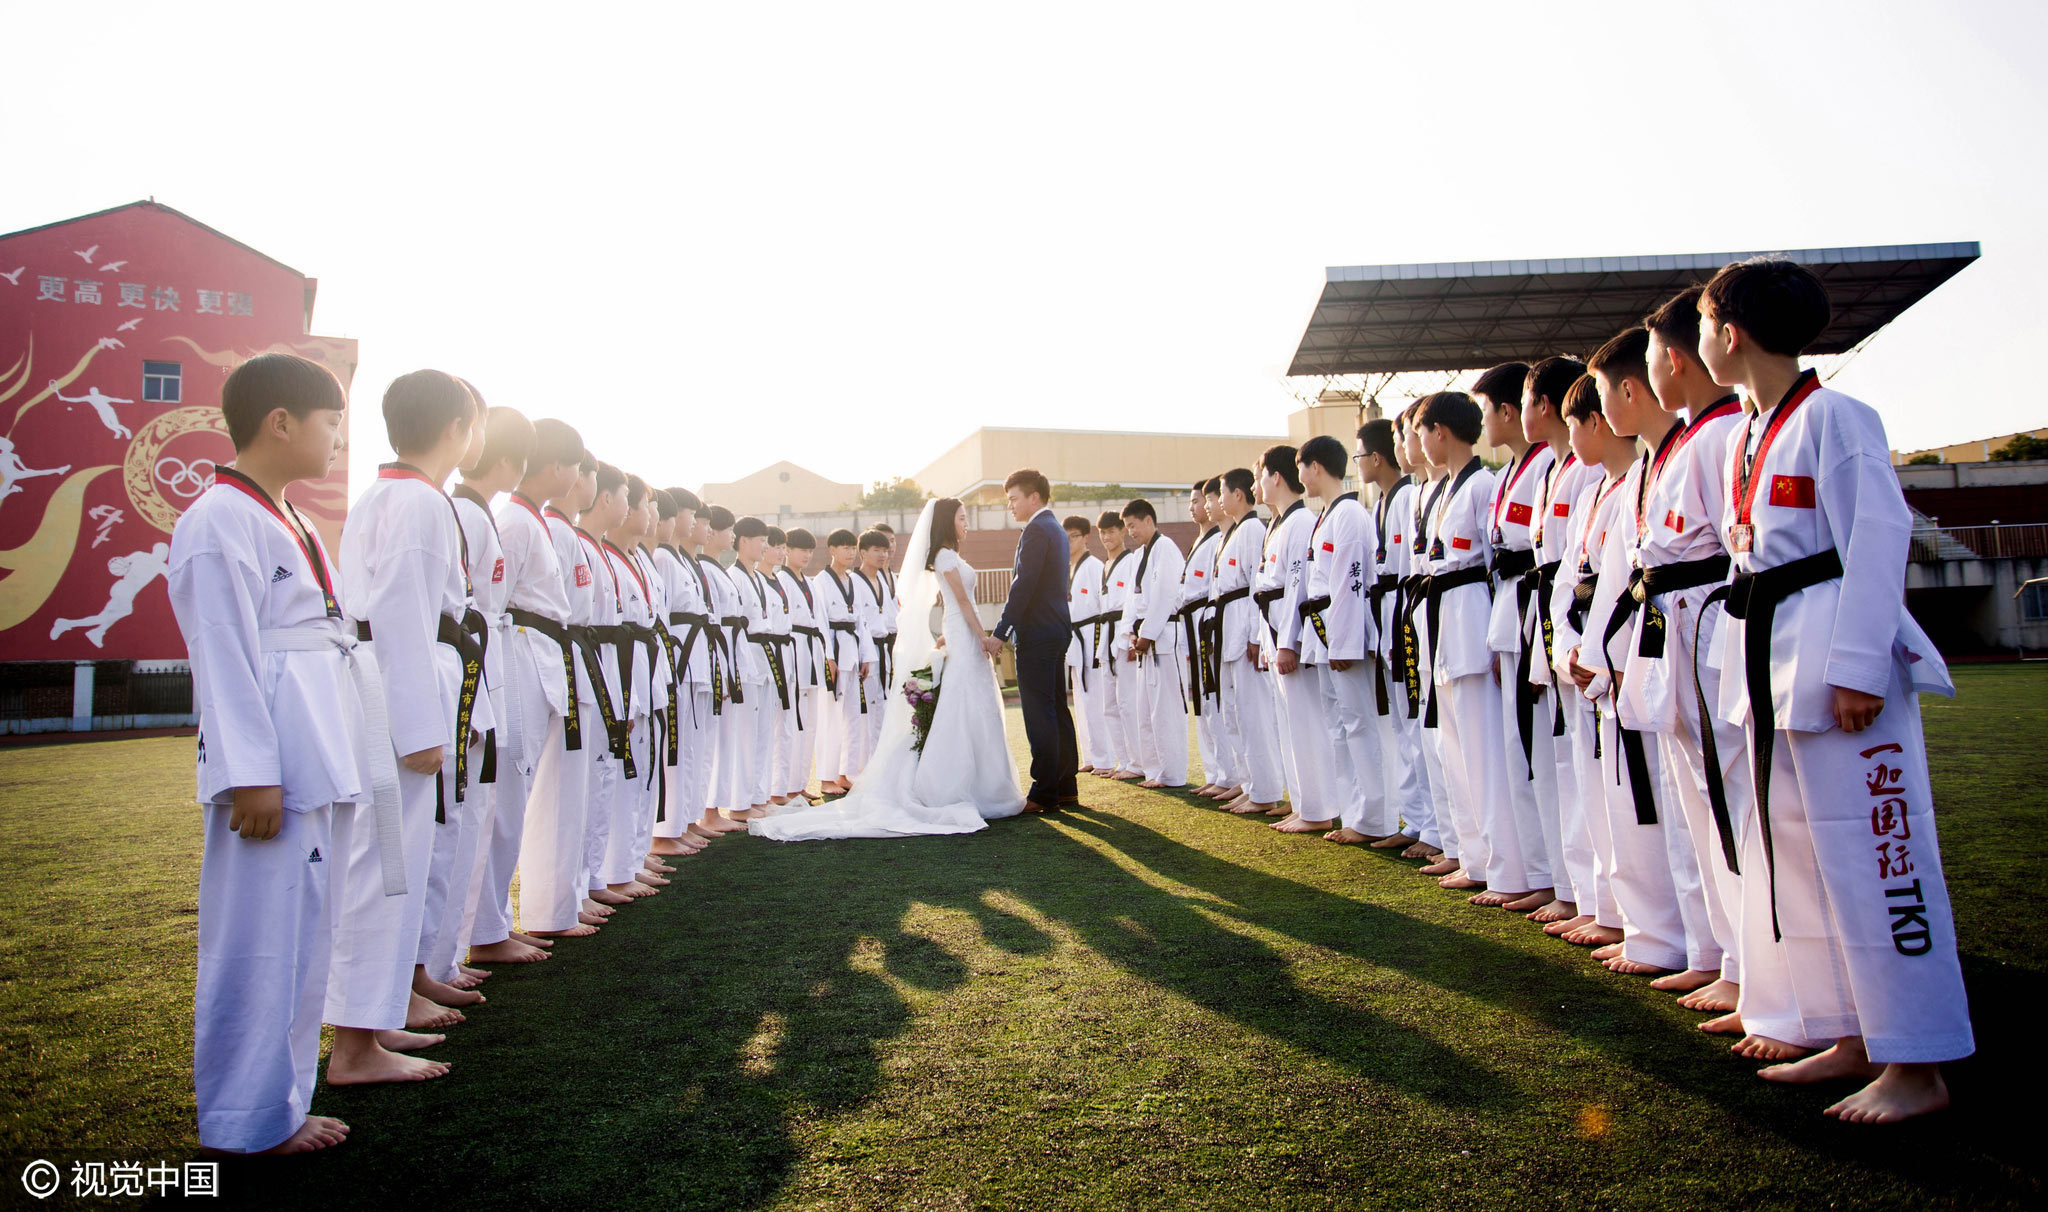 跆拳道教练夫妇拍婚纱照 学员簇拥显真情